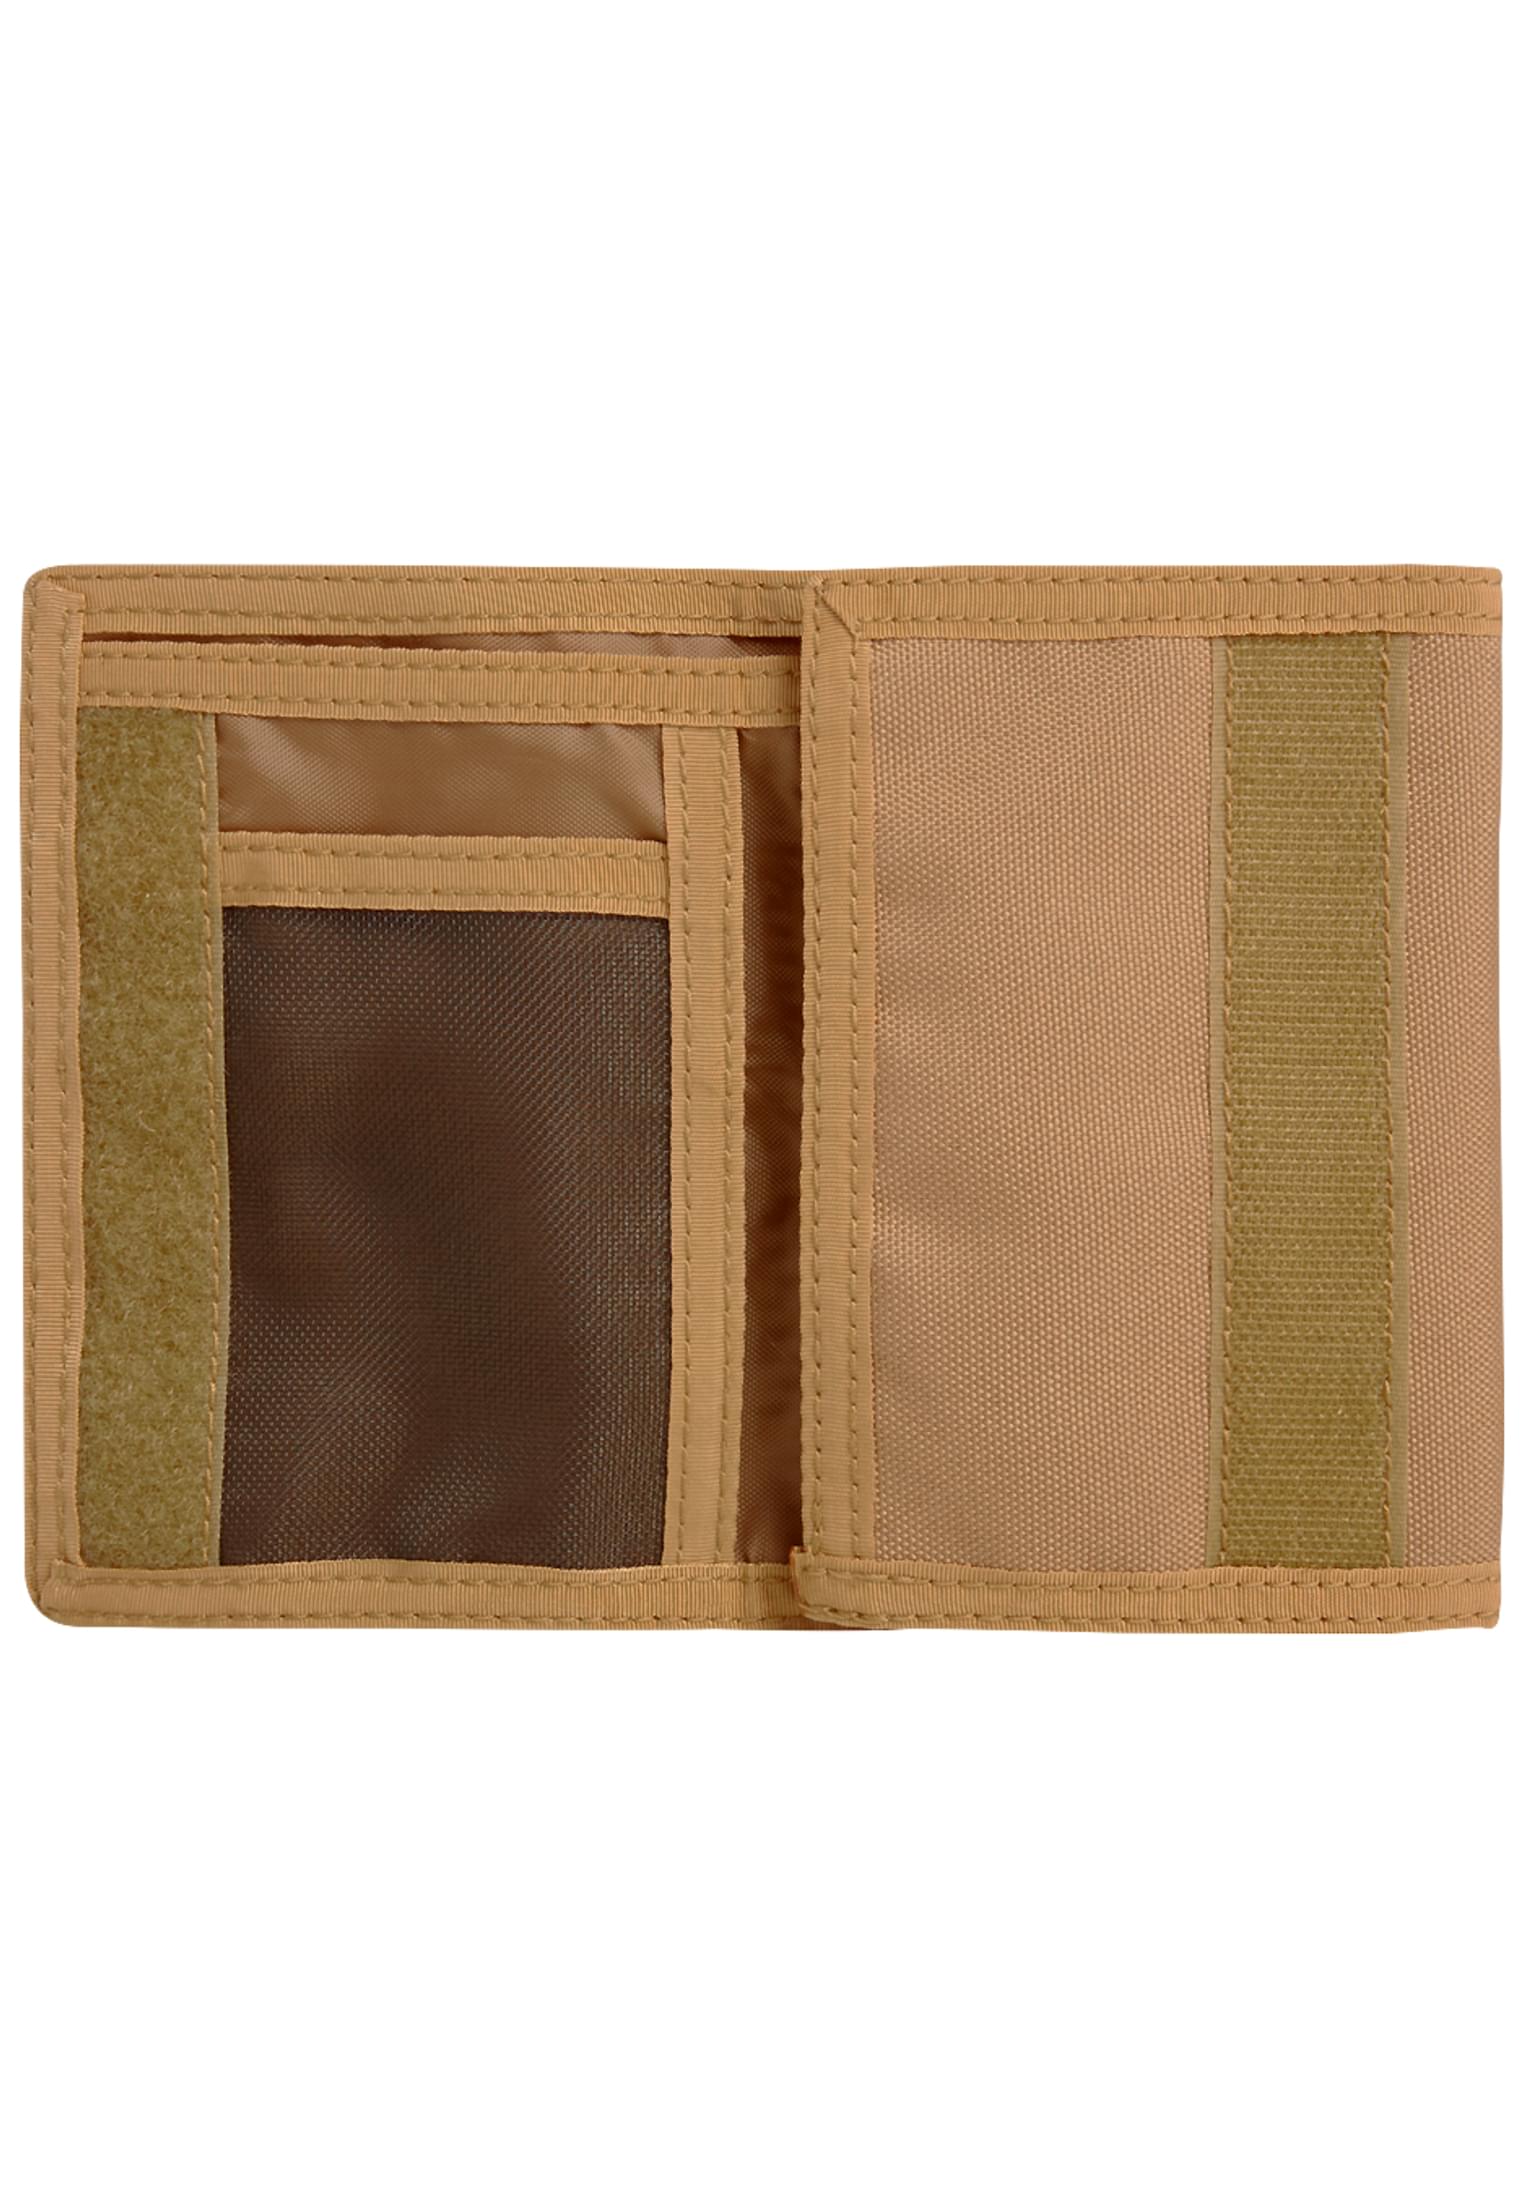 Taschen Wallet Three in Farbe camel